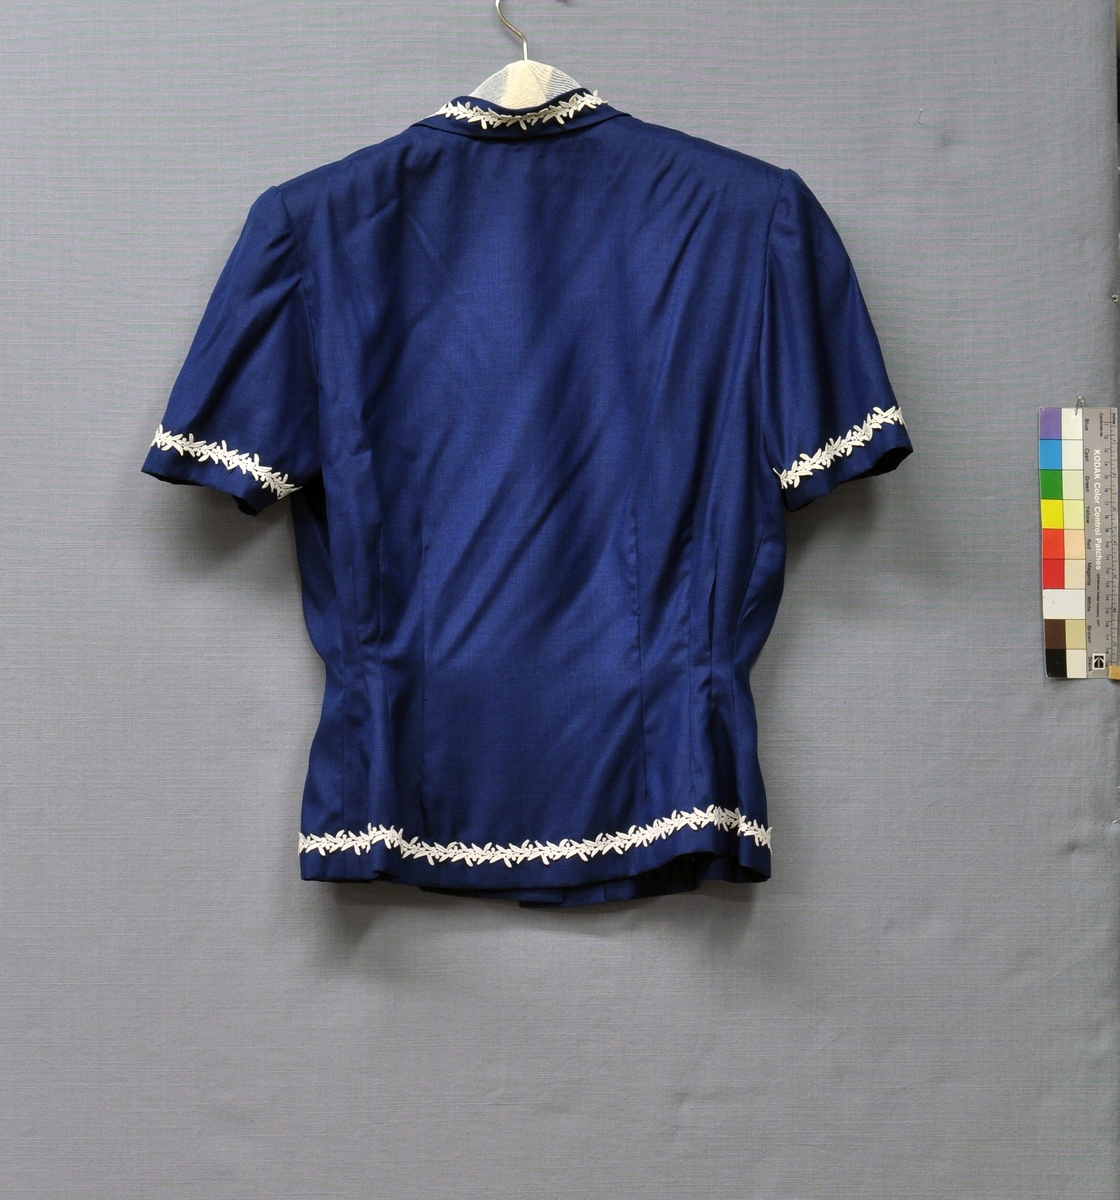 Mörkblå dräkt bestående av kortärmad jacka (BM63831:1) och kjol (BM63831:2) i silke och viskos. Jackans framsida delad, knäppt med 3 vita pärlemorknappar. 2 bystinsnitt, 4 midjeinsnitt. Baksidan helskuren med 6 midjeinsnitt. Schalkrage med snibbar. Kort ärm. Axelvaddar. Kragen, ärmarna och nederkanten garnerade med vit maskingjord blombård av bomull. 
Kjolen av 4 våder, rynkad. 25 mm bred linning knäppt med 2 hakar. Kjolens nederkant med samma blombård som på jackan. Blixtlås i vänster sida. Storlek 42.